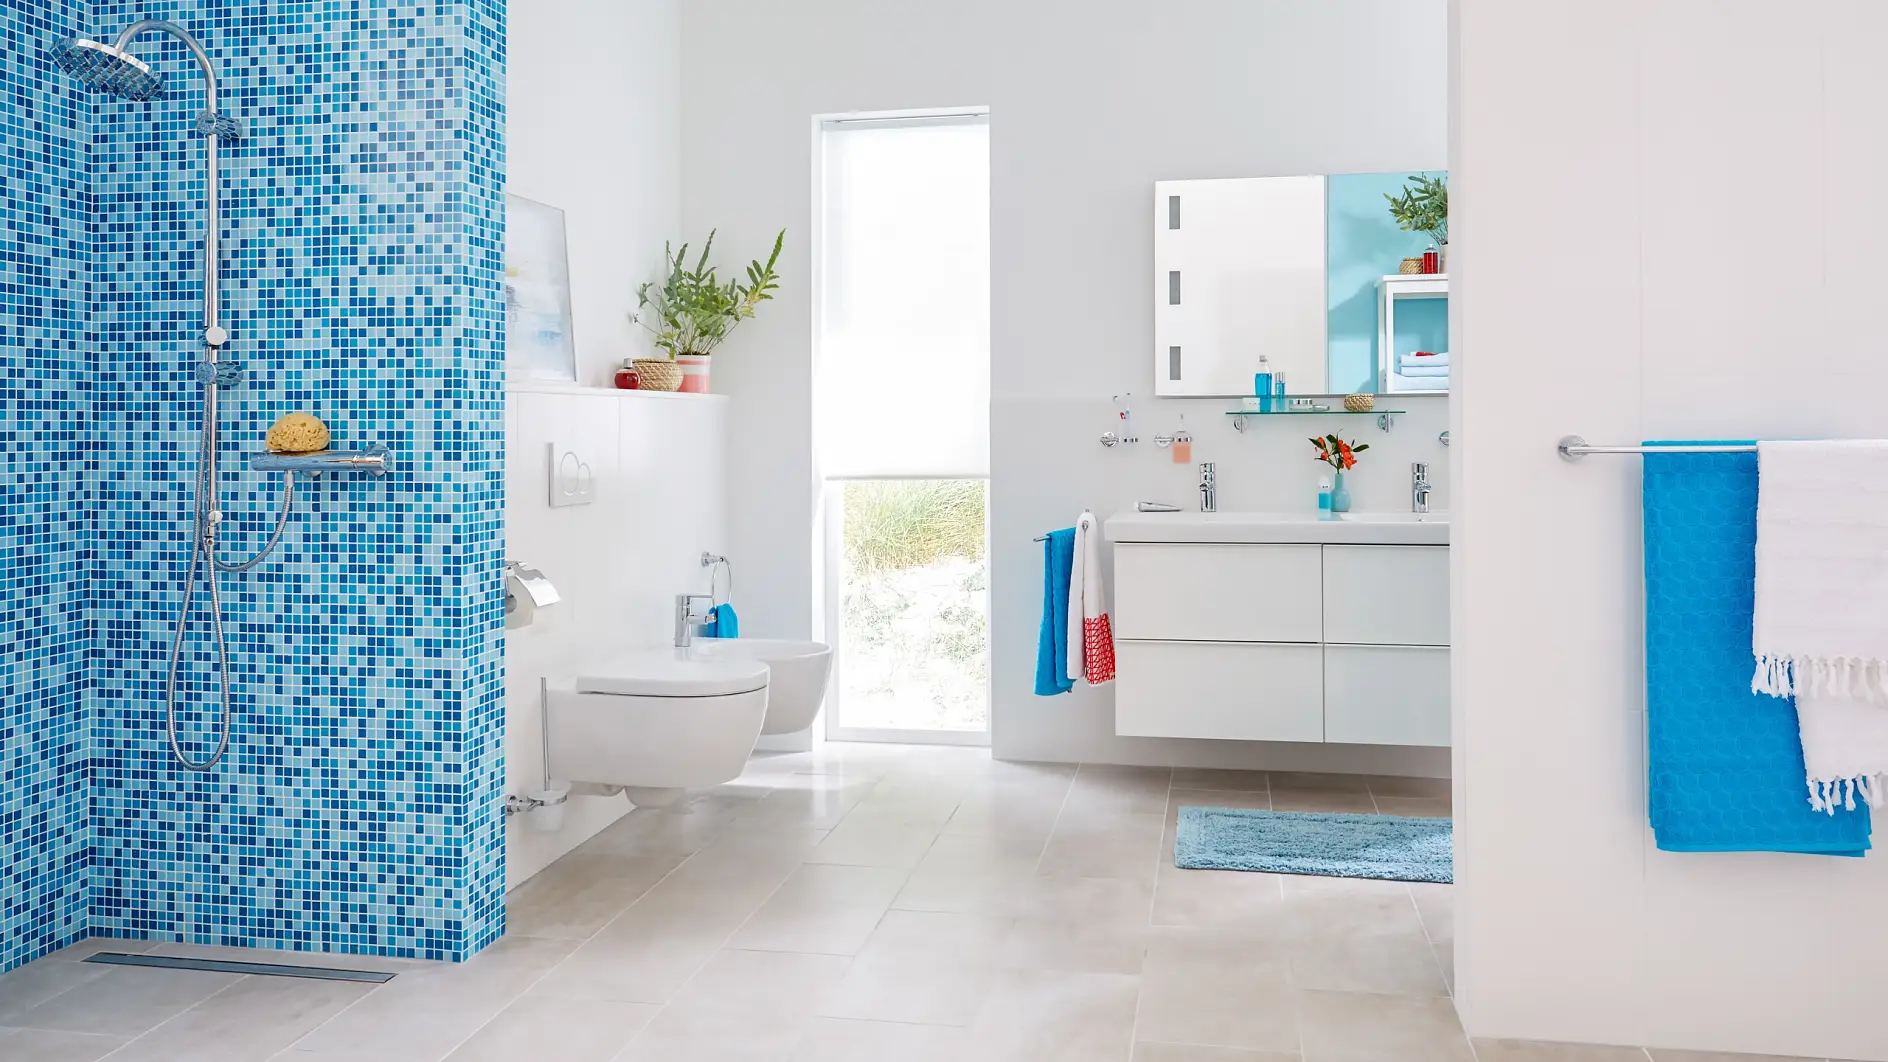 Dodajte svojej kúpeľni dotyk jednoduchosti s praktickým dizajnom.